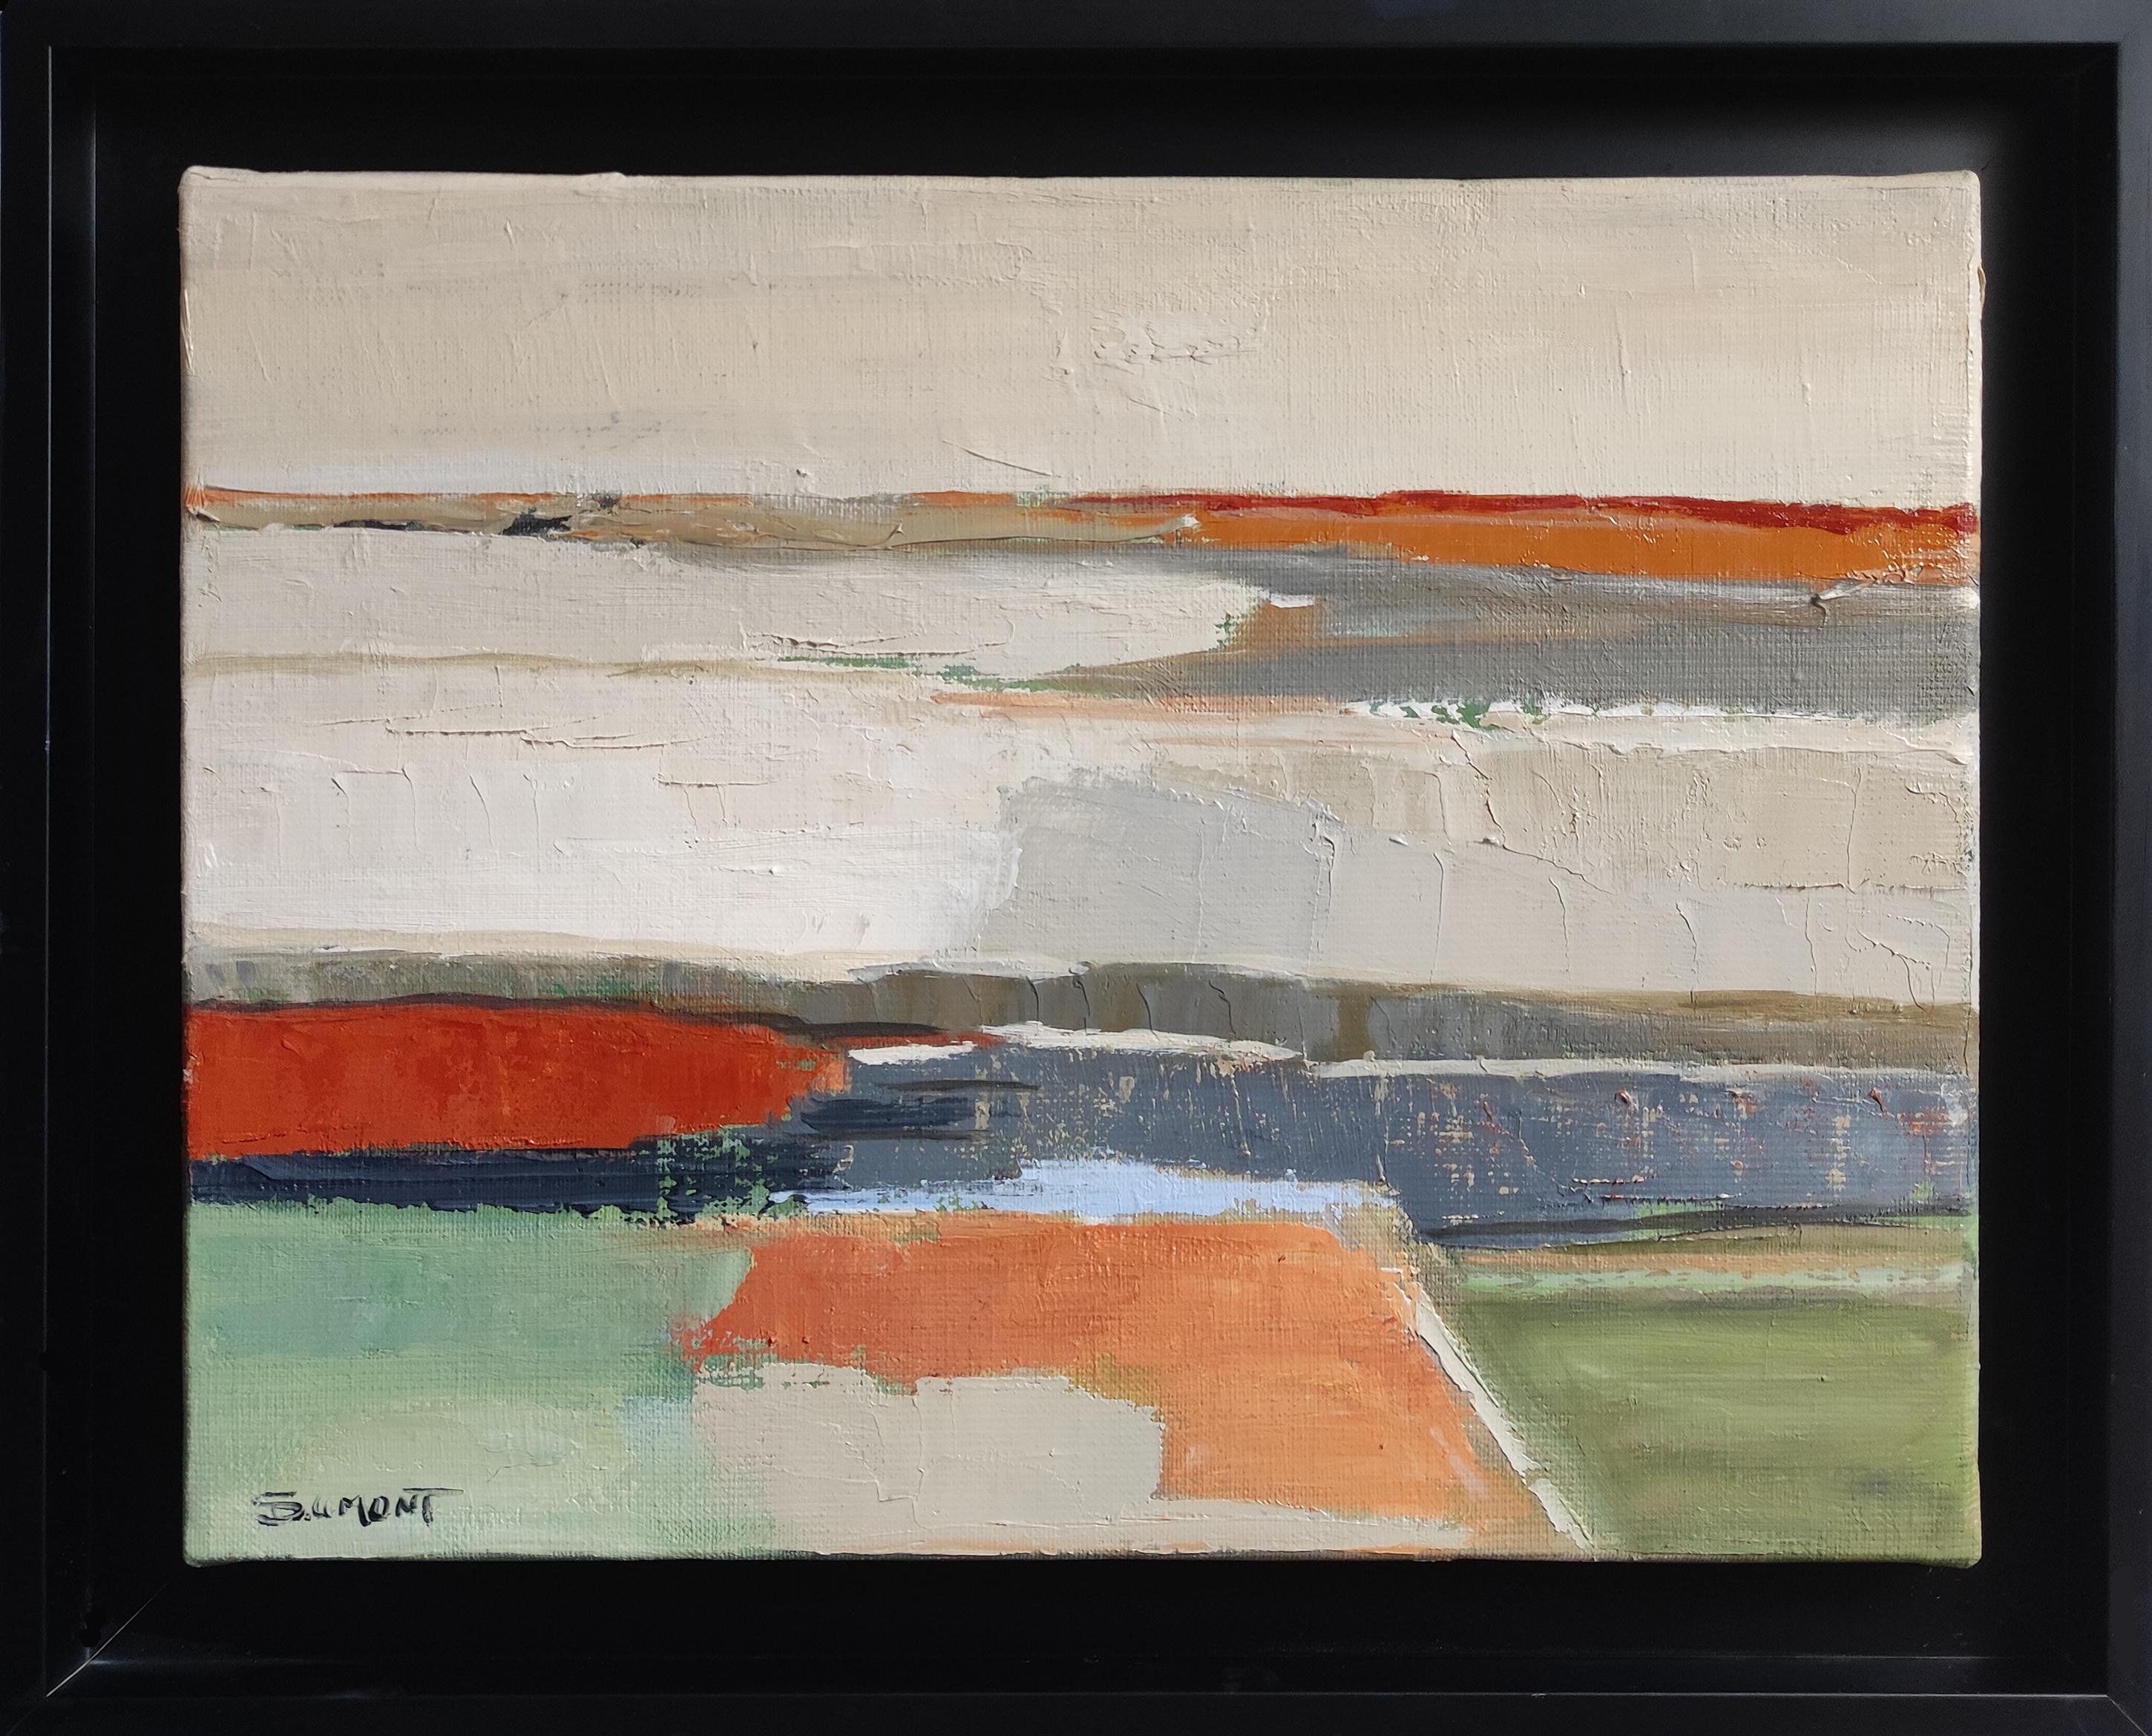 Landscape Painting SOPHIE DUMONT - Silence abstrait, paysage, huile sur toile, contemporain, artiste français, moderne